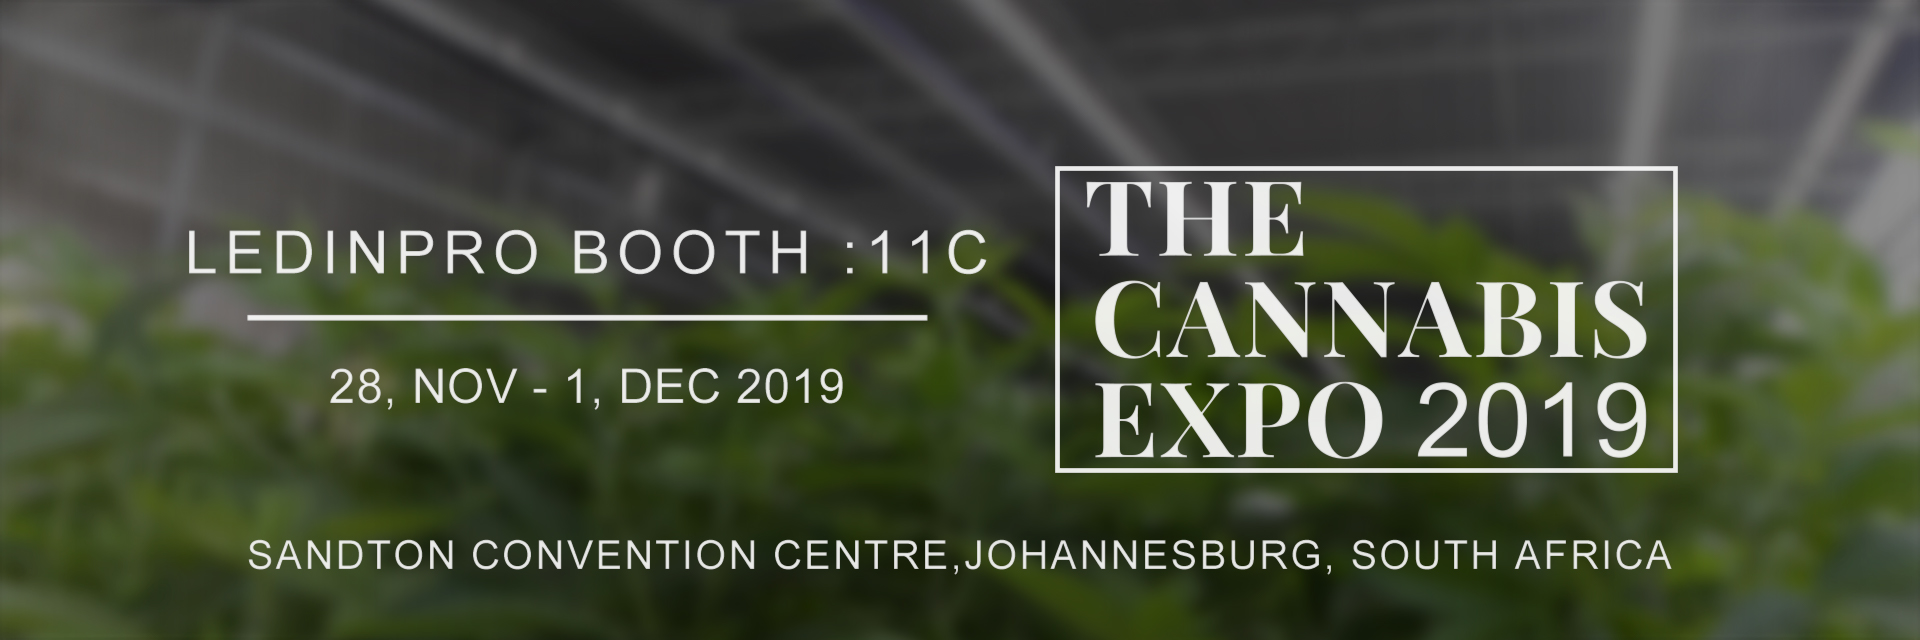 the cannabis expo 2019